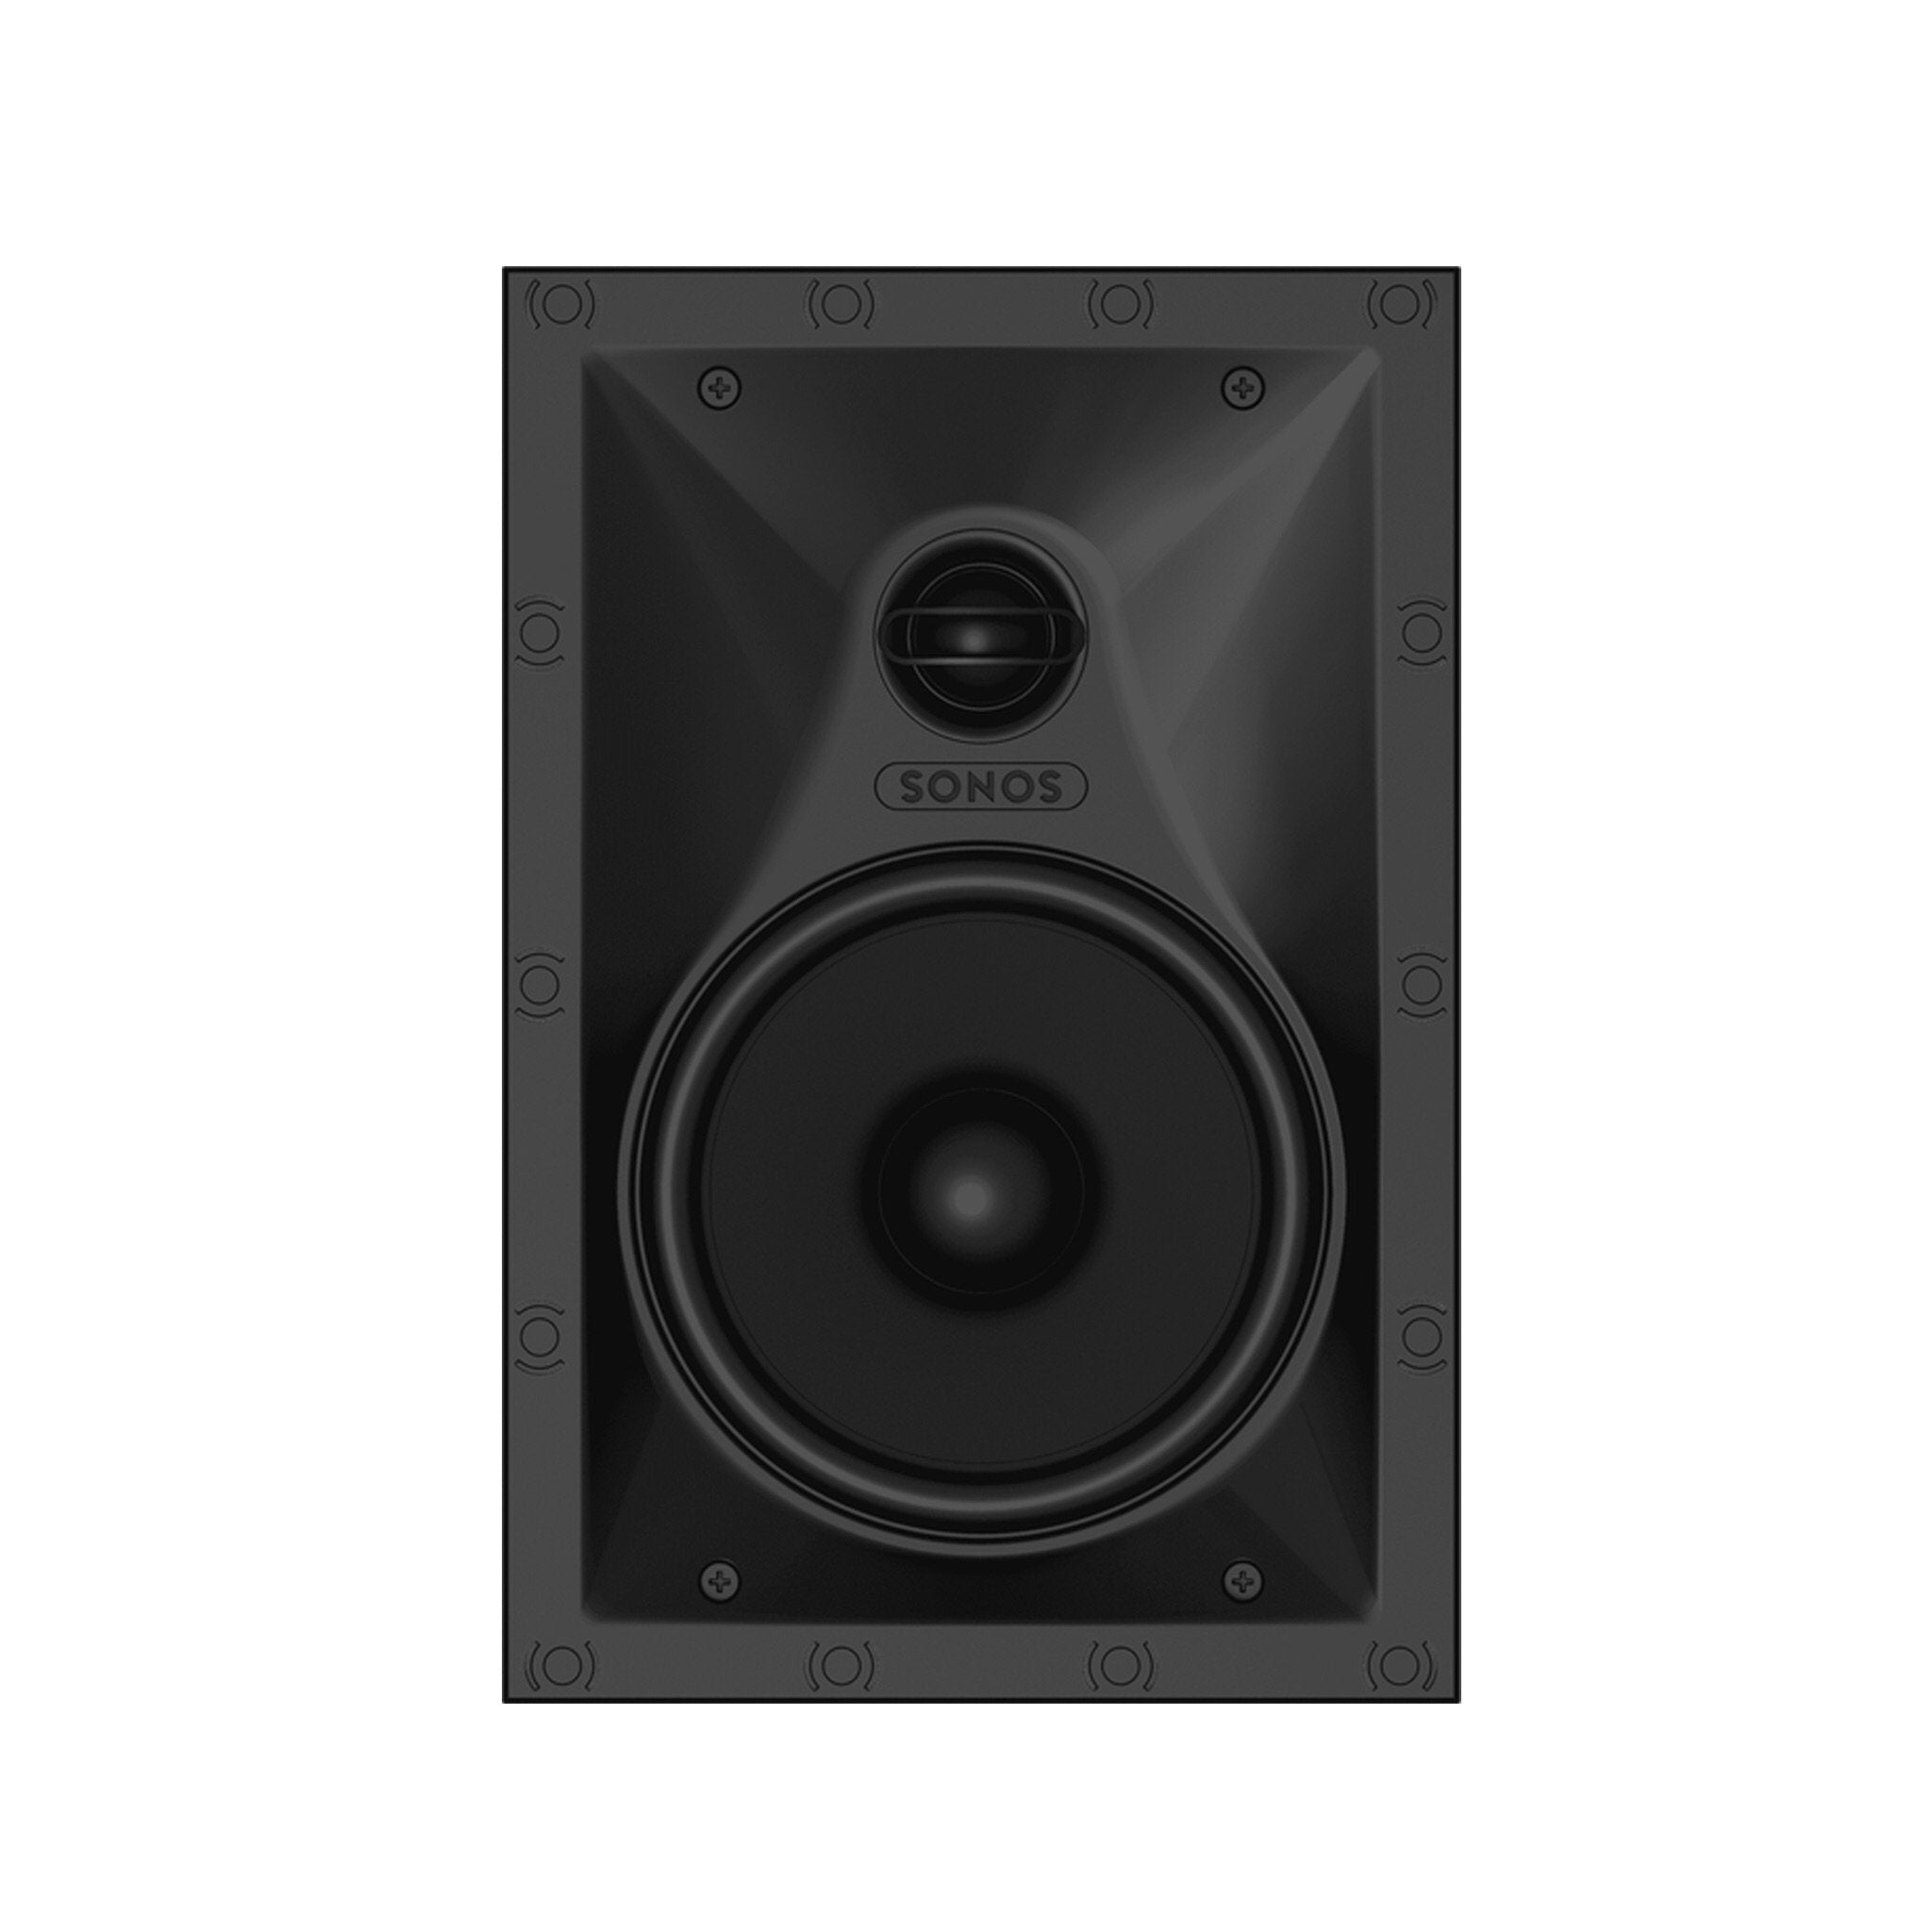 Sonos - In-Wall Speakers (Pair) Australia